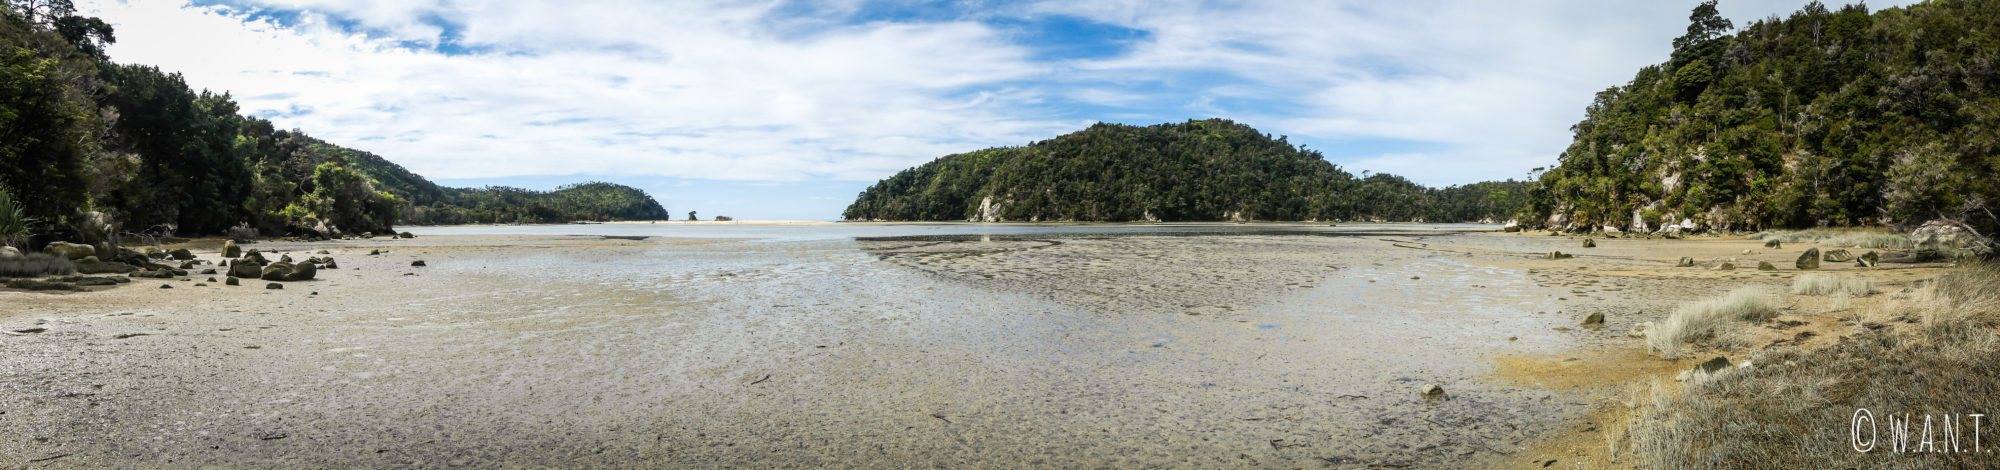 Marée basse au parc national Abel Tasman en Nouvelle-Zélande